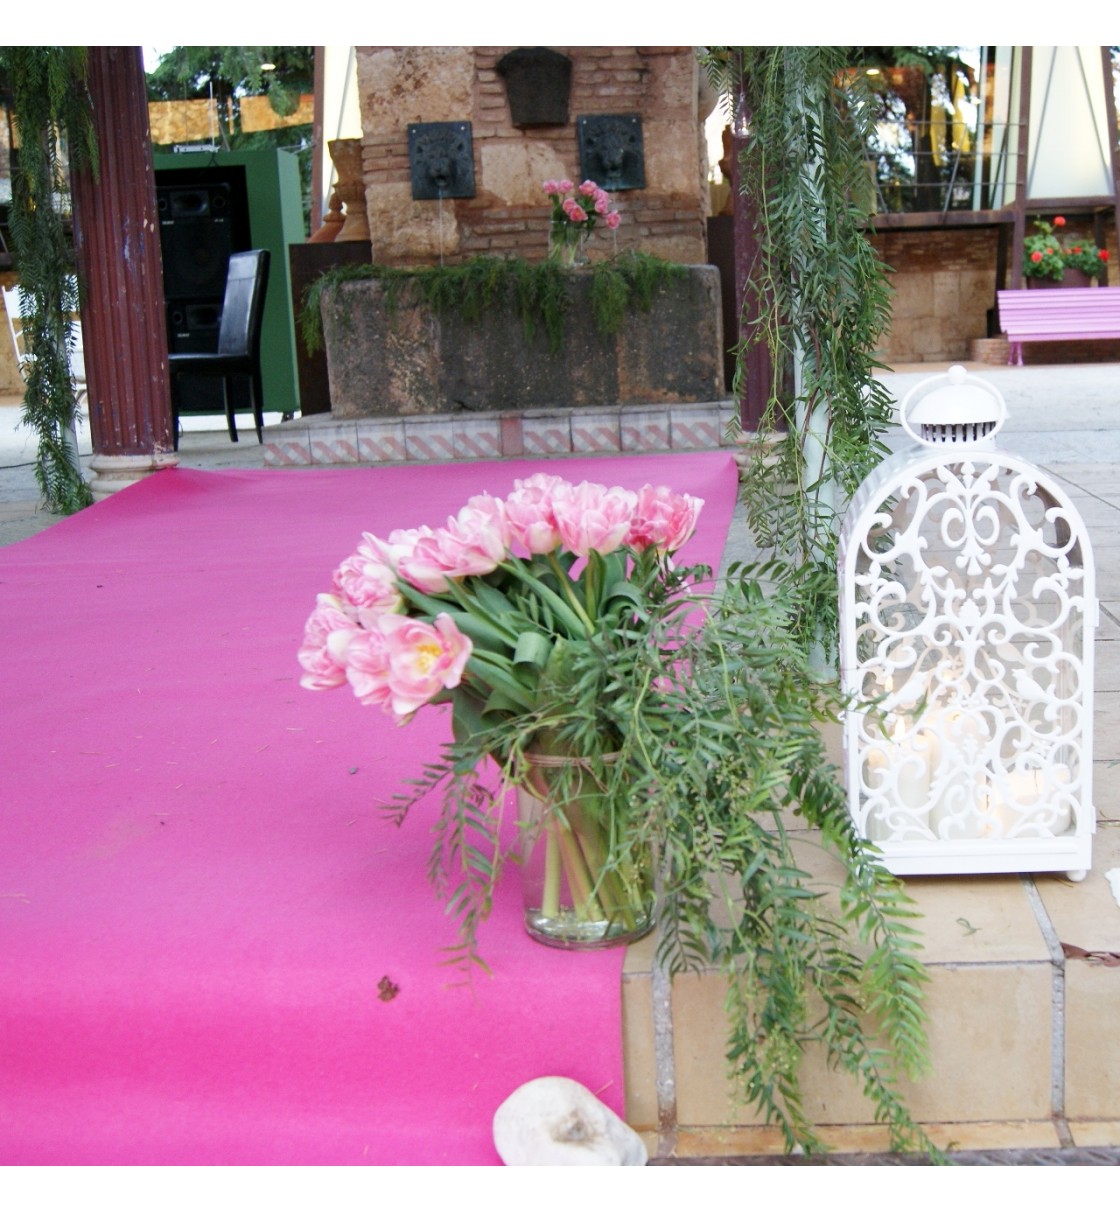 Decoración Palacio de la serna boda civil con tulipan rosa